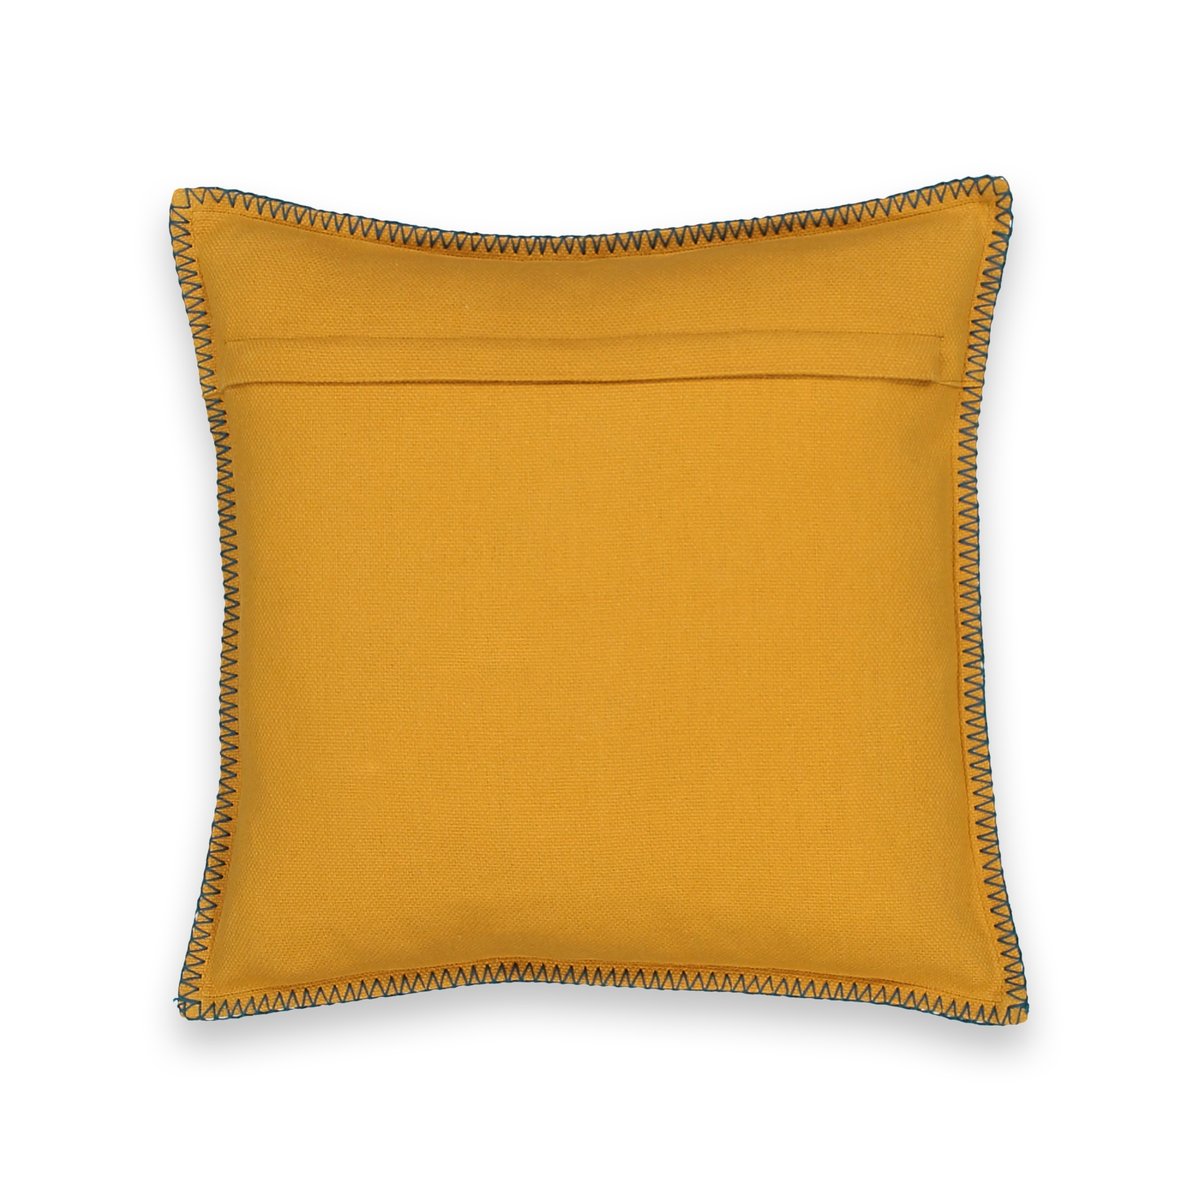 Чехол La Redoute На подушку с рисунком PANAMA 40 x 40 см желтый, размер 40 x 40 см - фото 2